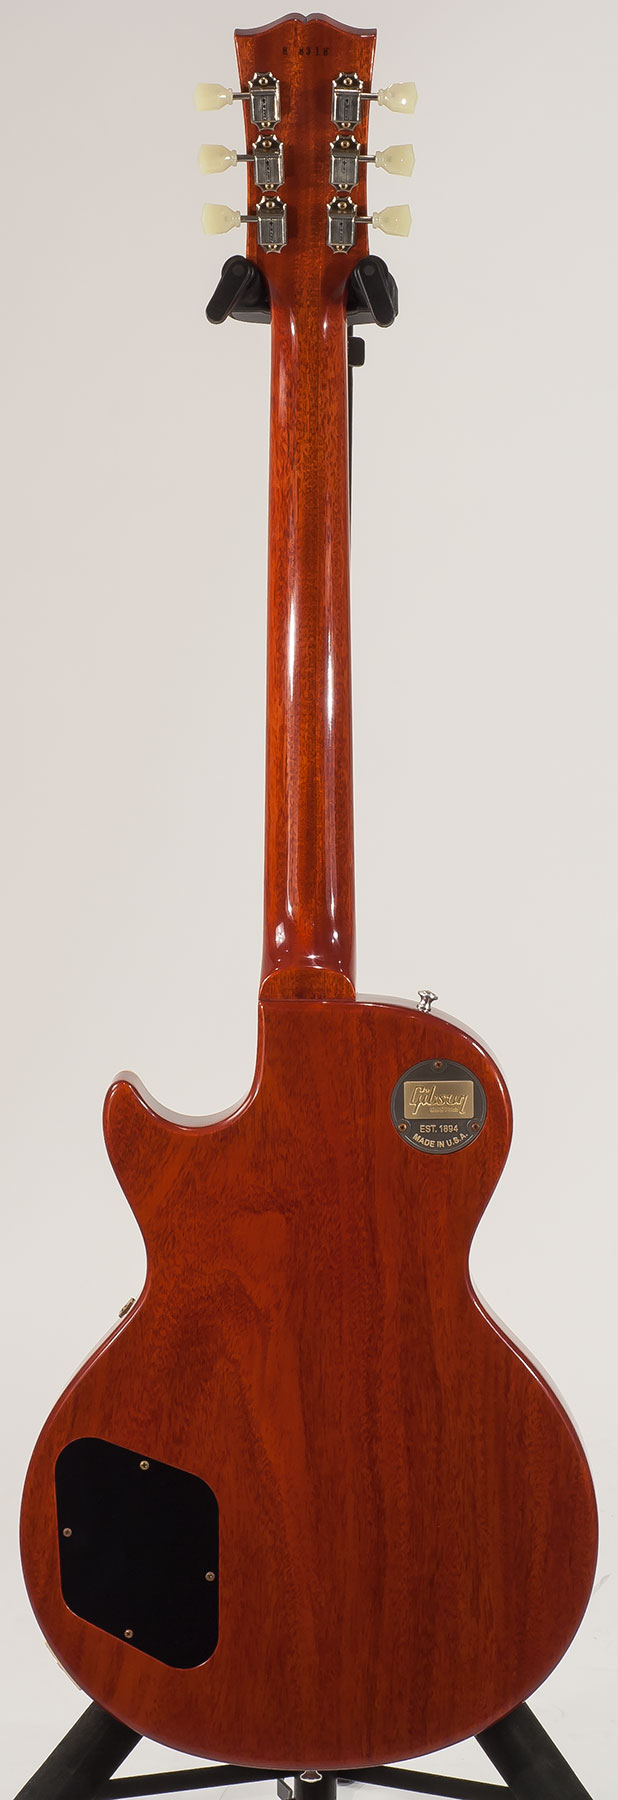 Gibson Custom Shop Les Paul Standard 1958 2h Ht Rw - Vos Royal Teaburst - Guitare Électrique Single Cut - Variation 1